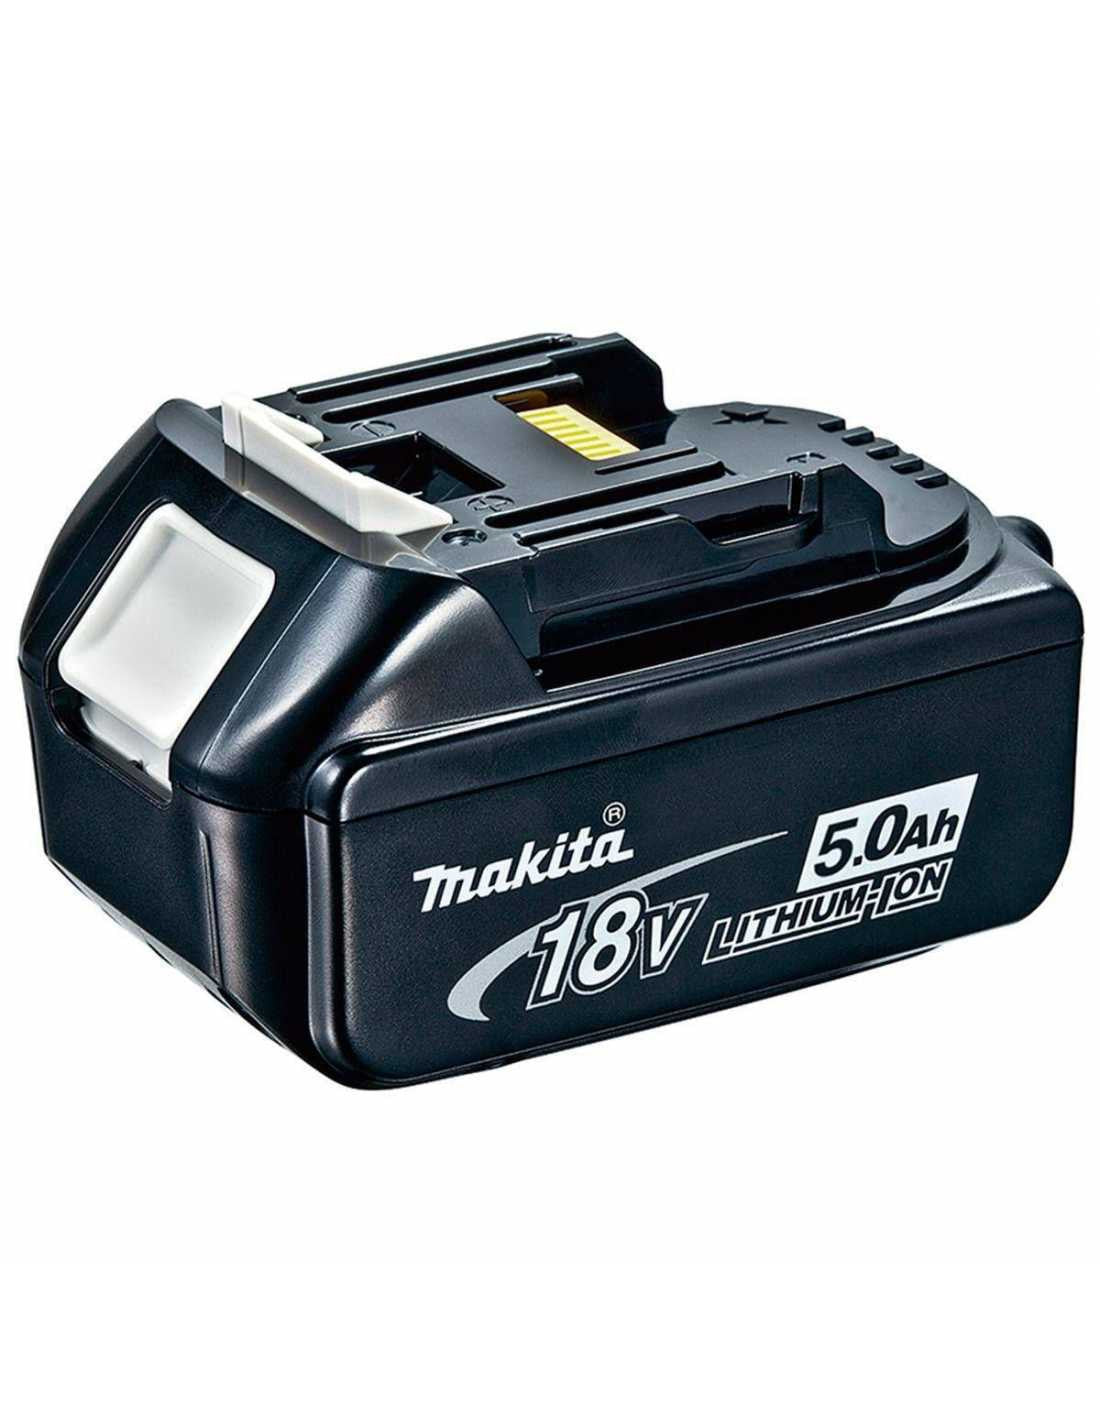 Kit Makita Marteau perforateur DHP486 + Scie à guichet DJR186 + 2bat 5Ah + chargeur + sac LXT600 DLX2486BL2